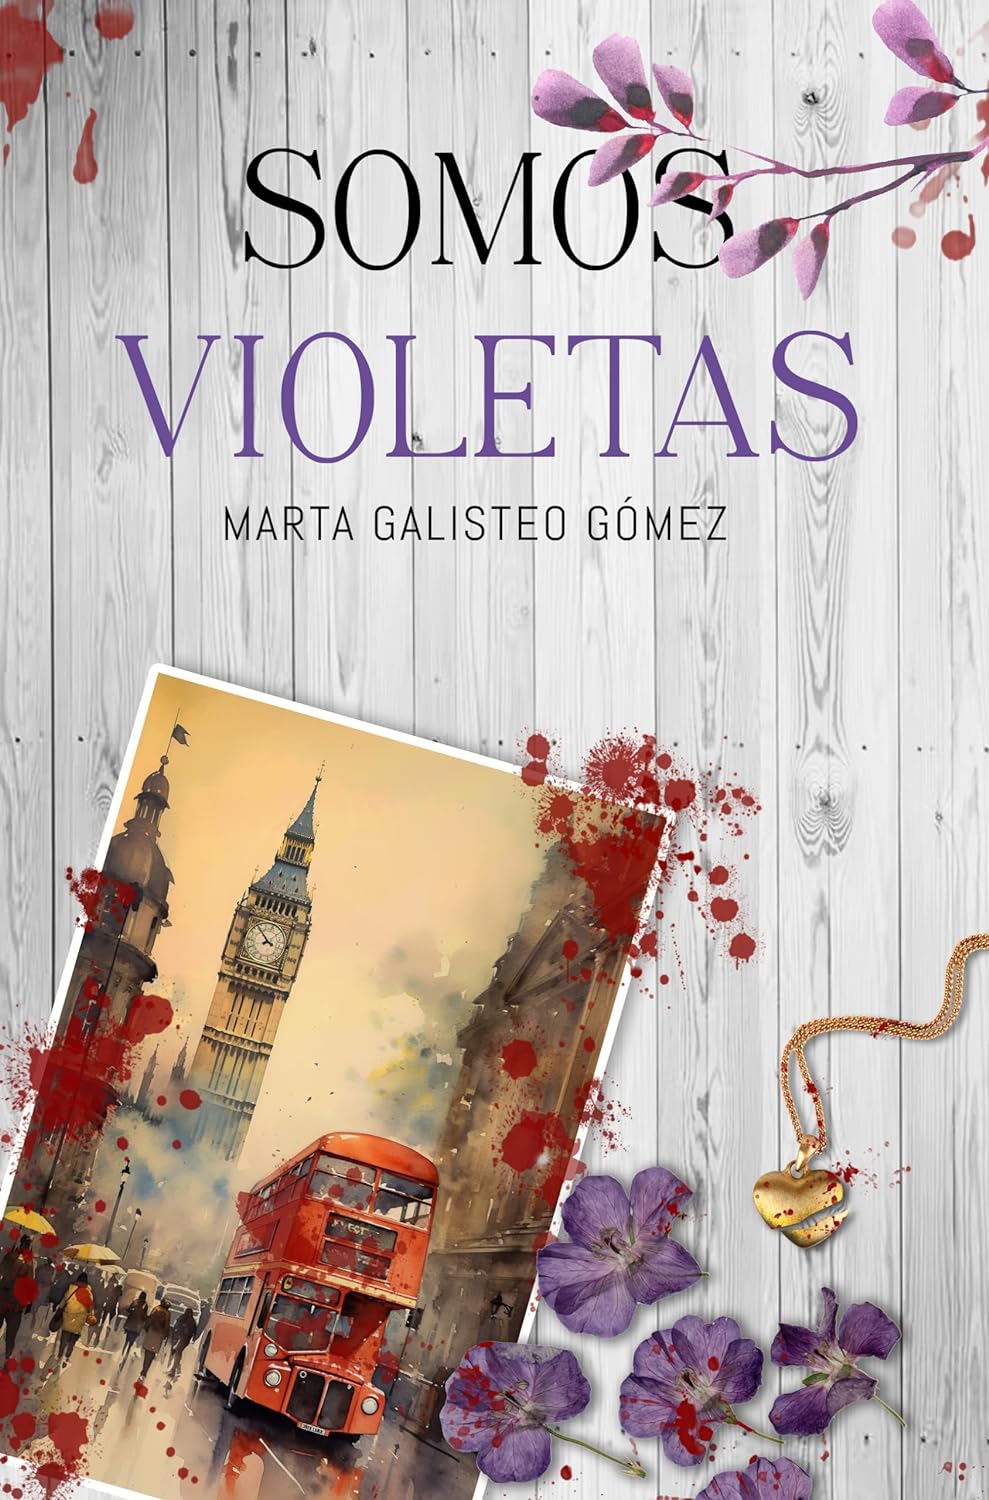 Reseña de Somos violetas, de Marta Galisteo Gómez